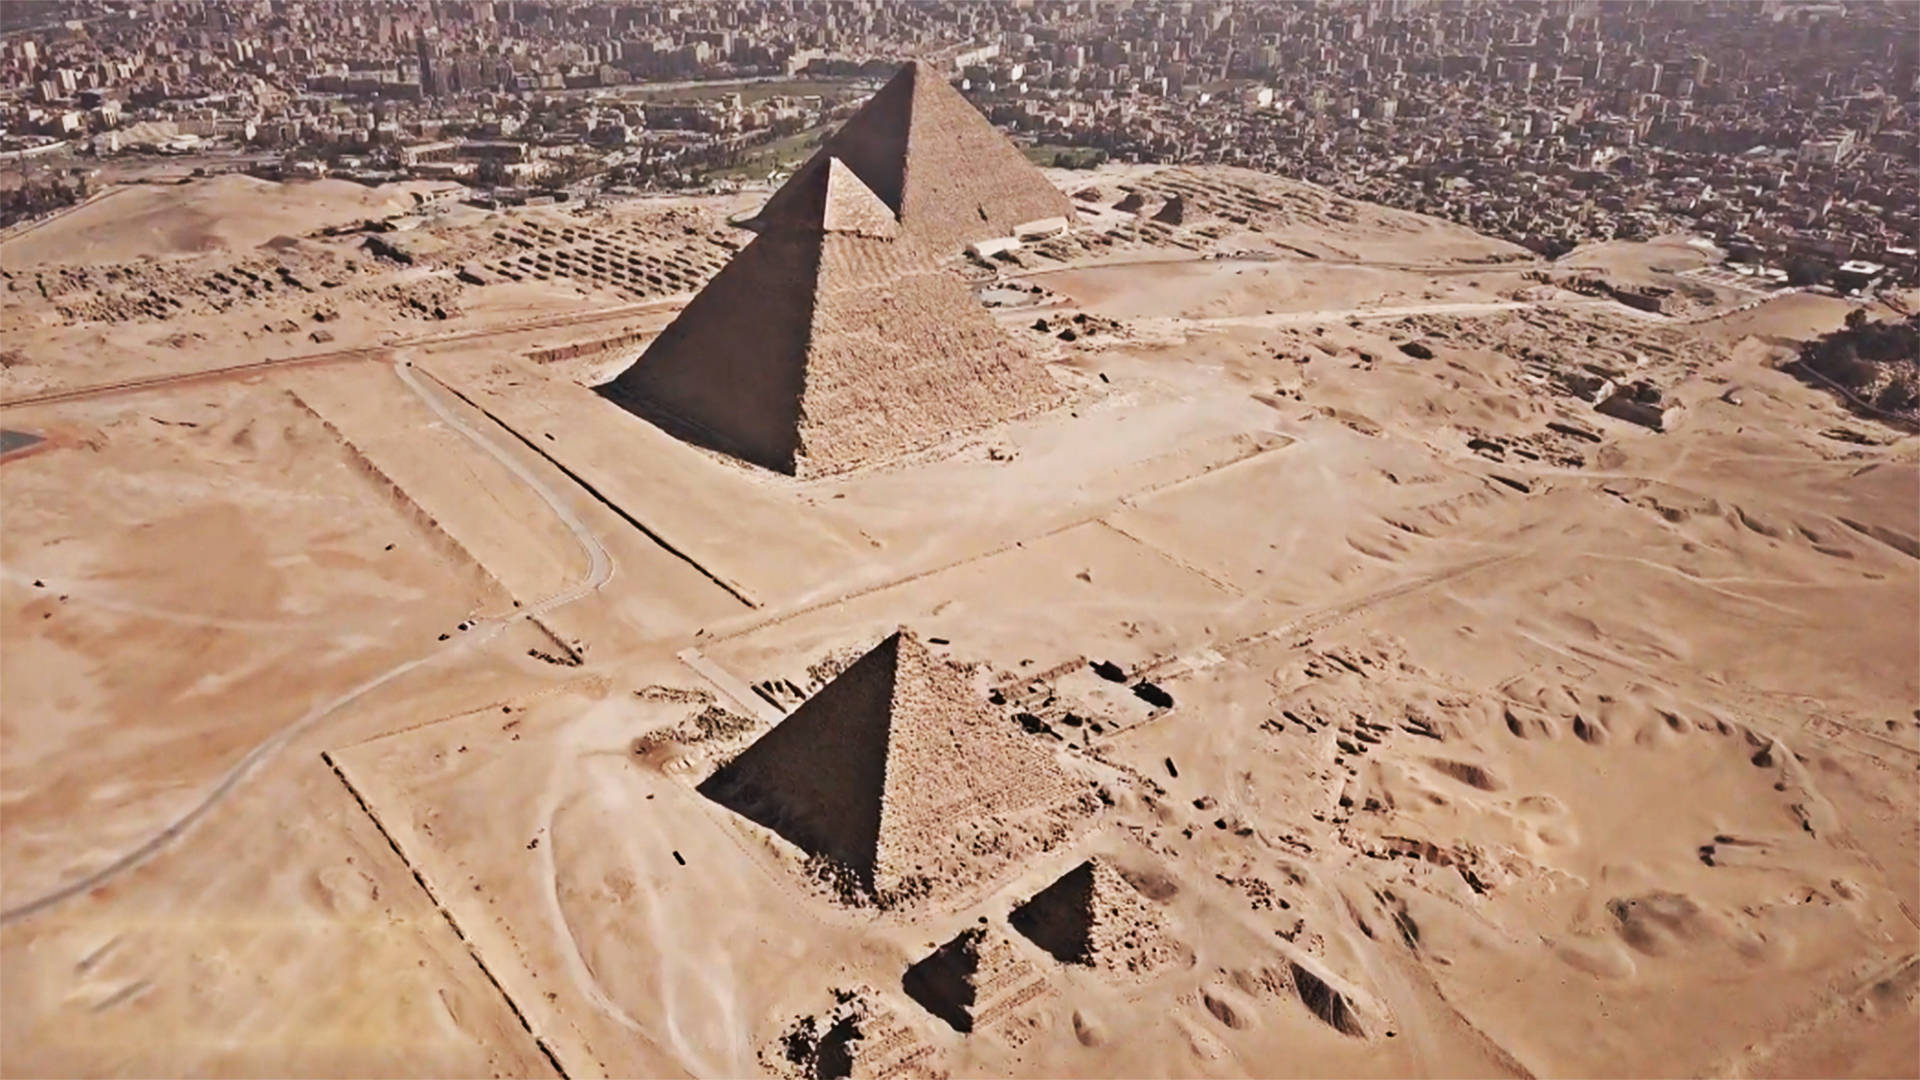   揭秘吉萨金字塔神秘的暗室:古埃及文明的又一重要篇章被发现。 